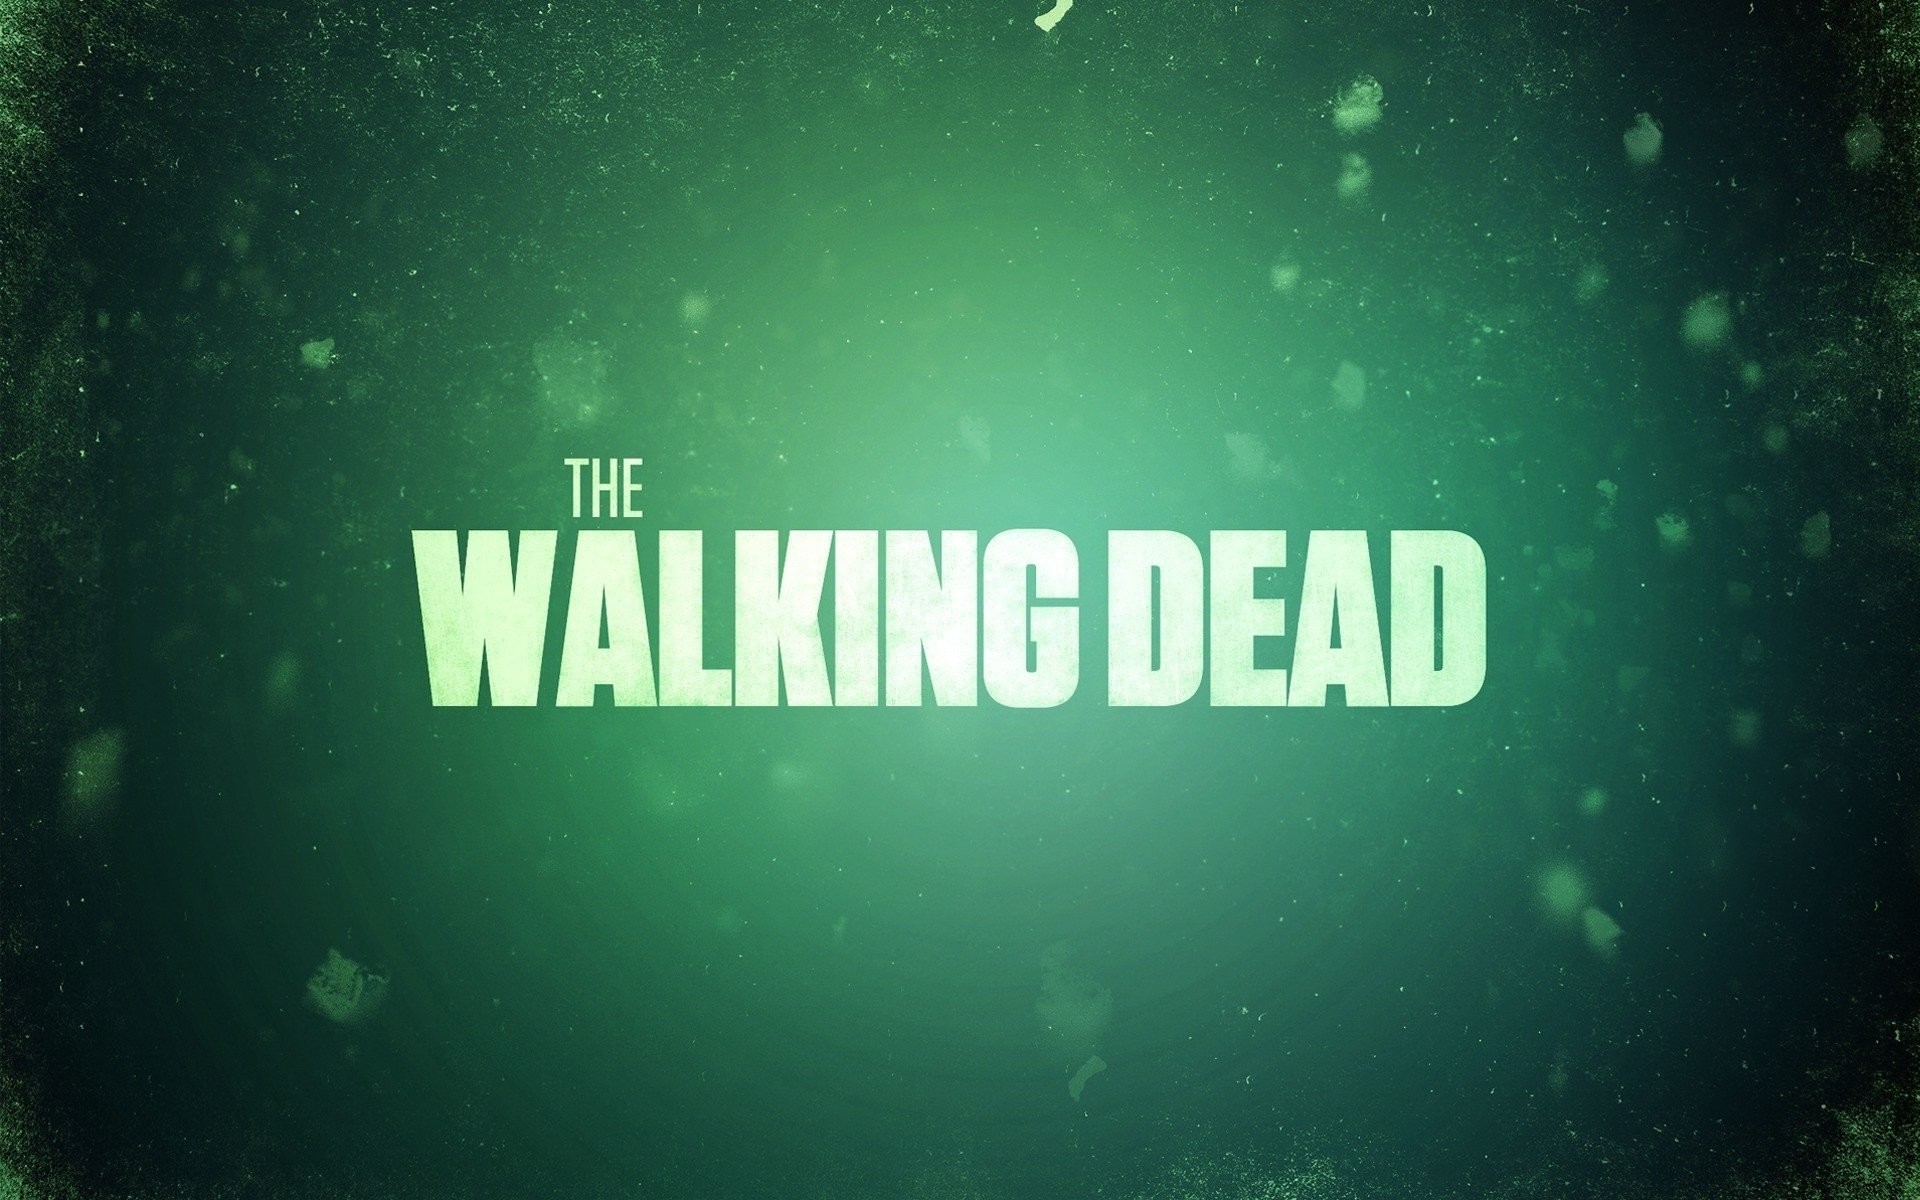 The Walking Dead HD Wallpaper Background ID447876